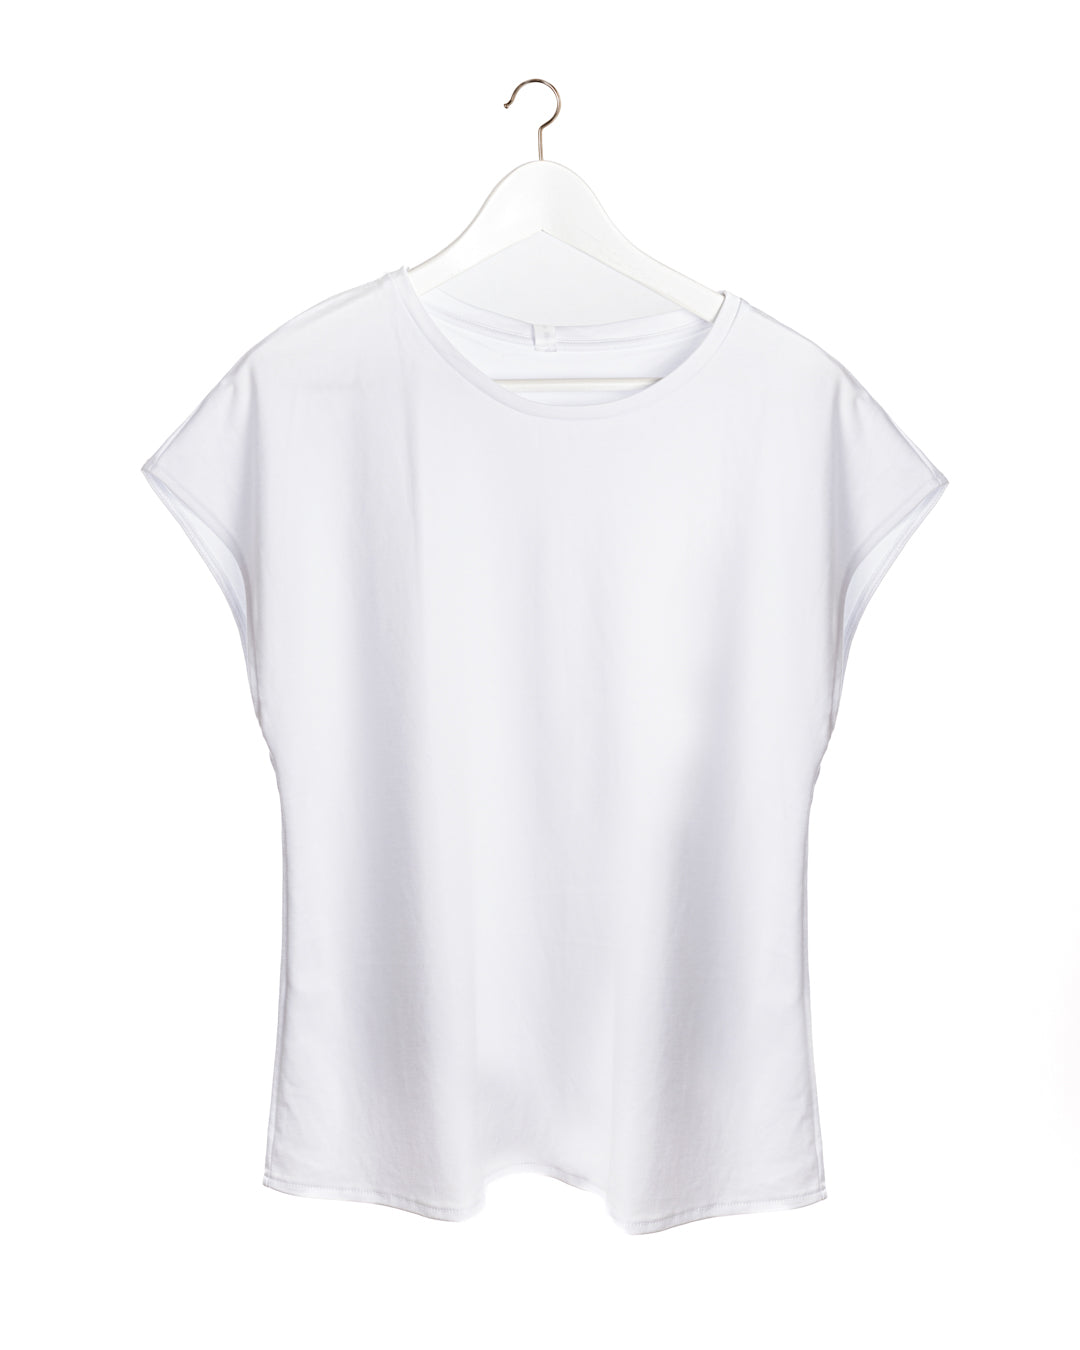 Le Cotonne- Classic t-shirt drop shoulders